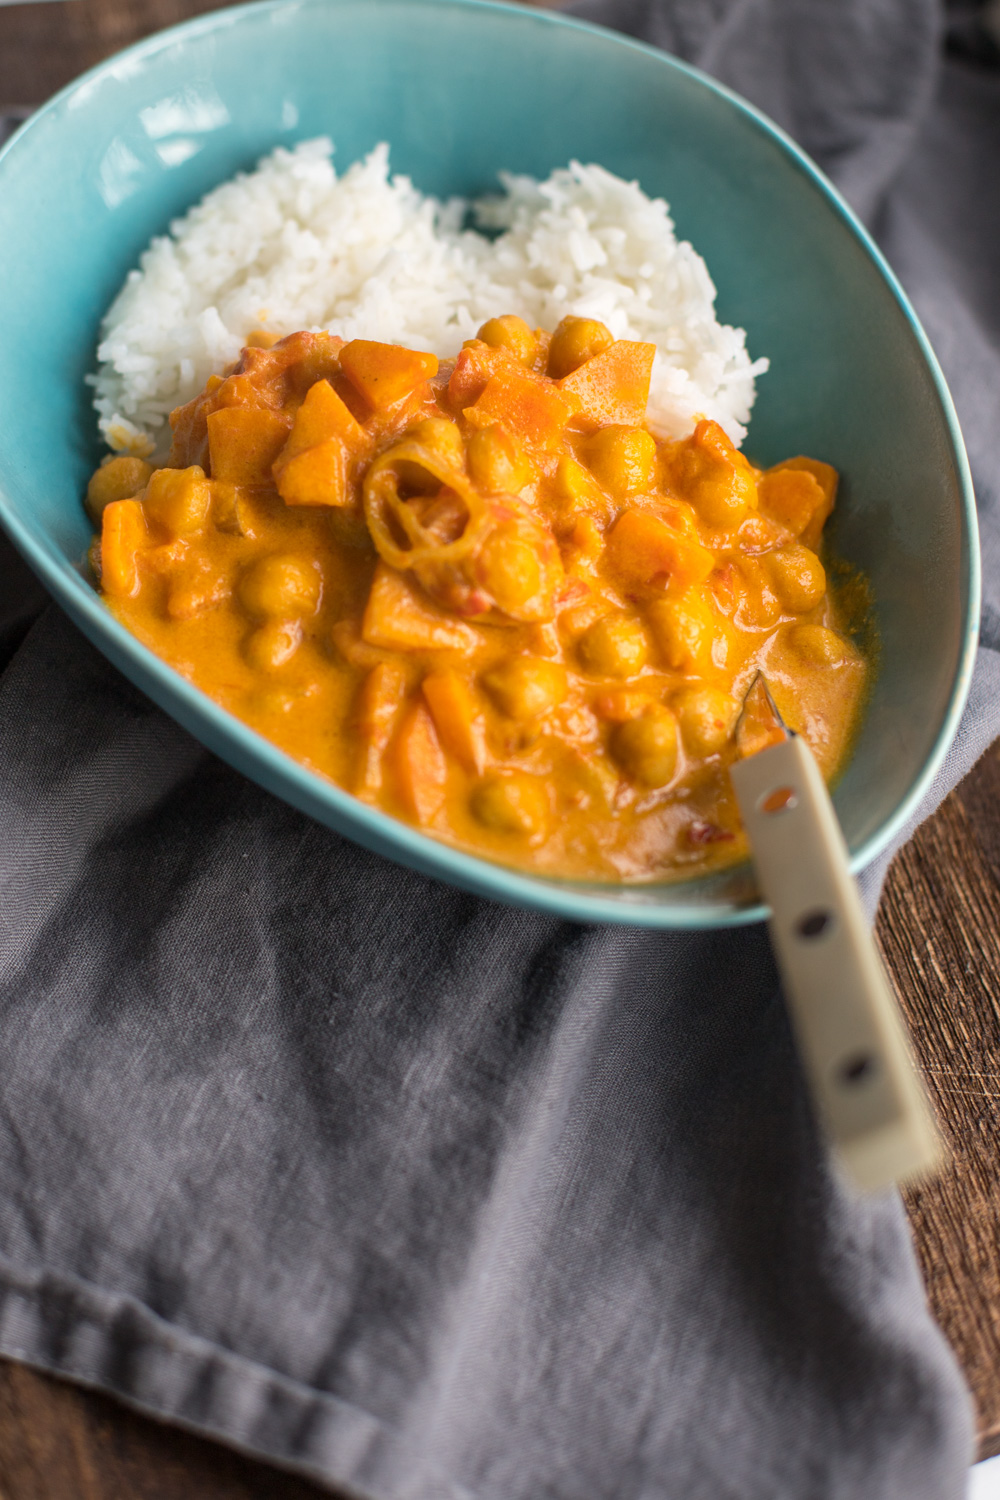 Mittag ist fertig - das Rezept für ein schnelles veganes Kichererbsen Curry mit Kokosmilch findet Ihr jetzt auf dem Blog! 